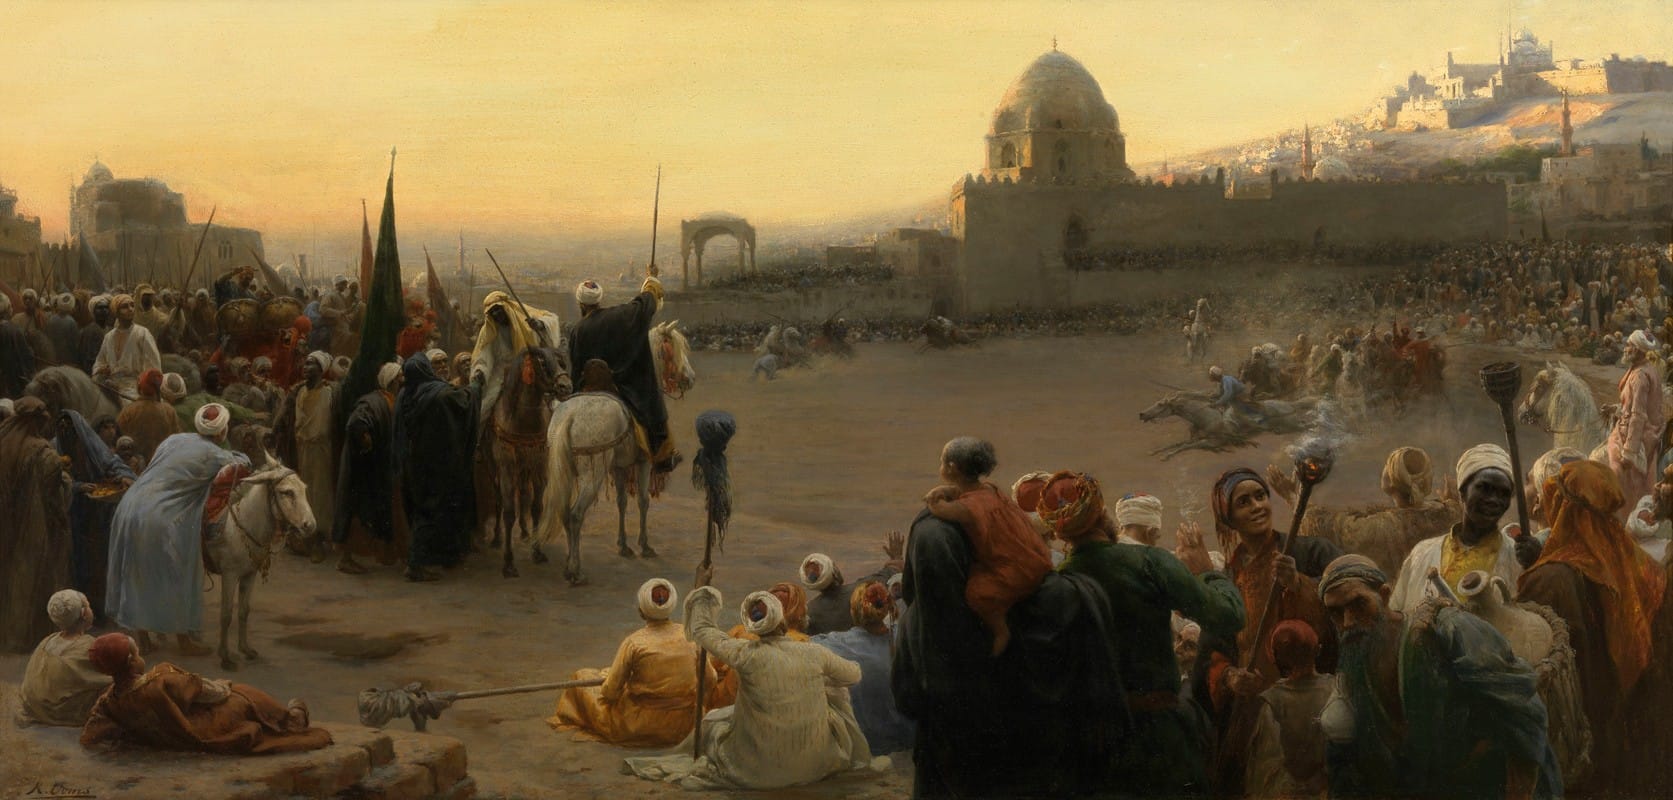 Karel Ooms - Fantasy in Egypt